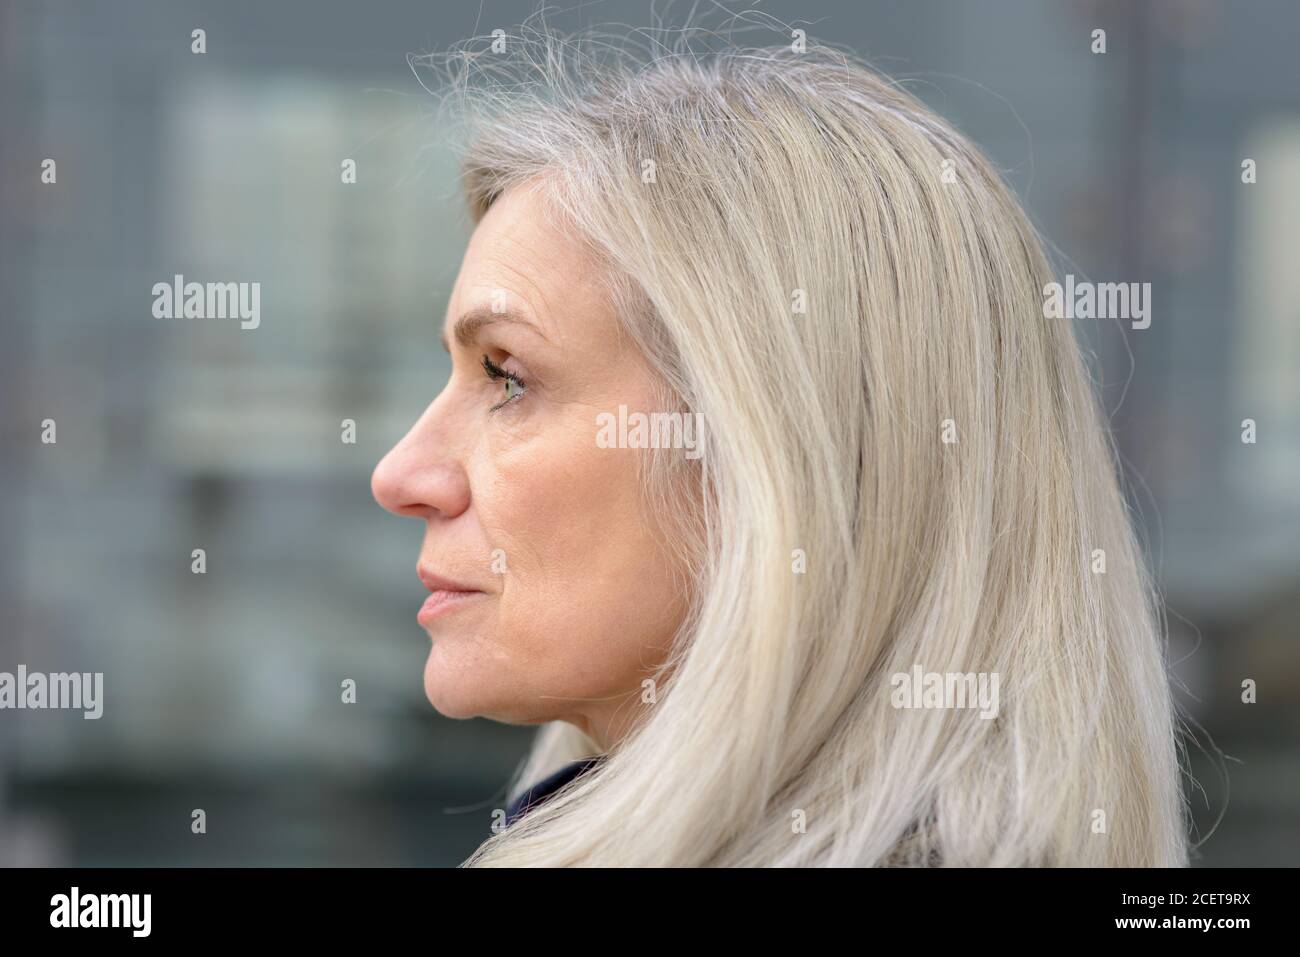 Profil Portrait von eine attraktive Frau mittleren Alters mit schulterlange Haare auf der linken Seite des Rahmens Stockfoto